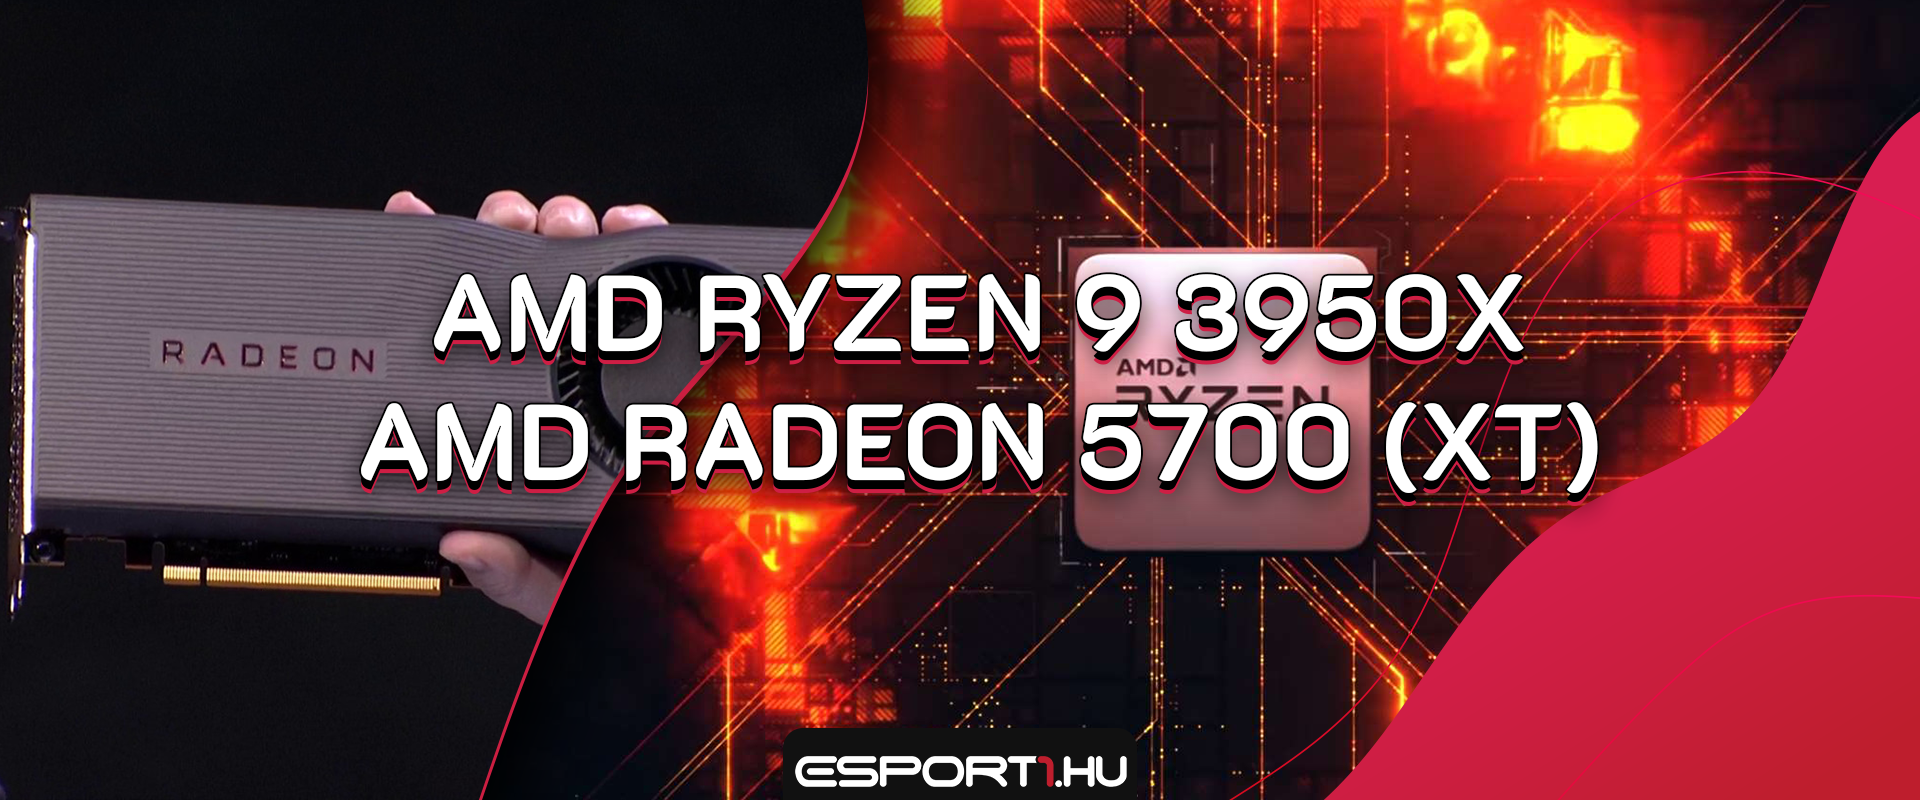 Itt a legdurvább AMD Ryzen processzor és az RTX 2070 új ellenfele!